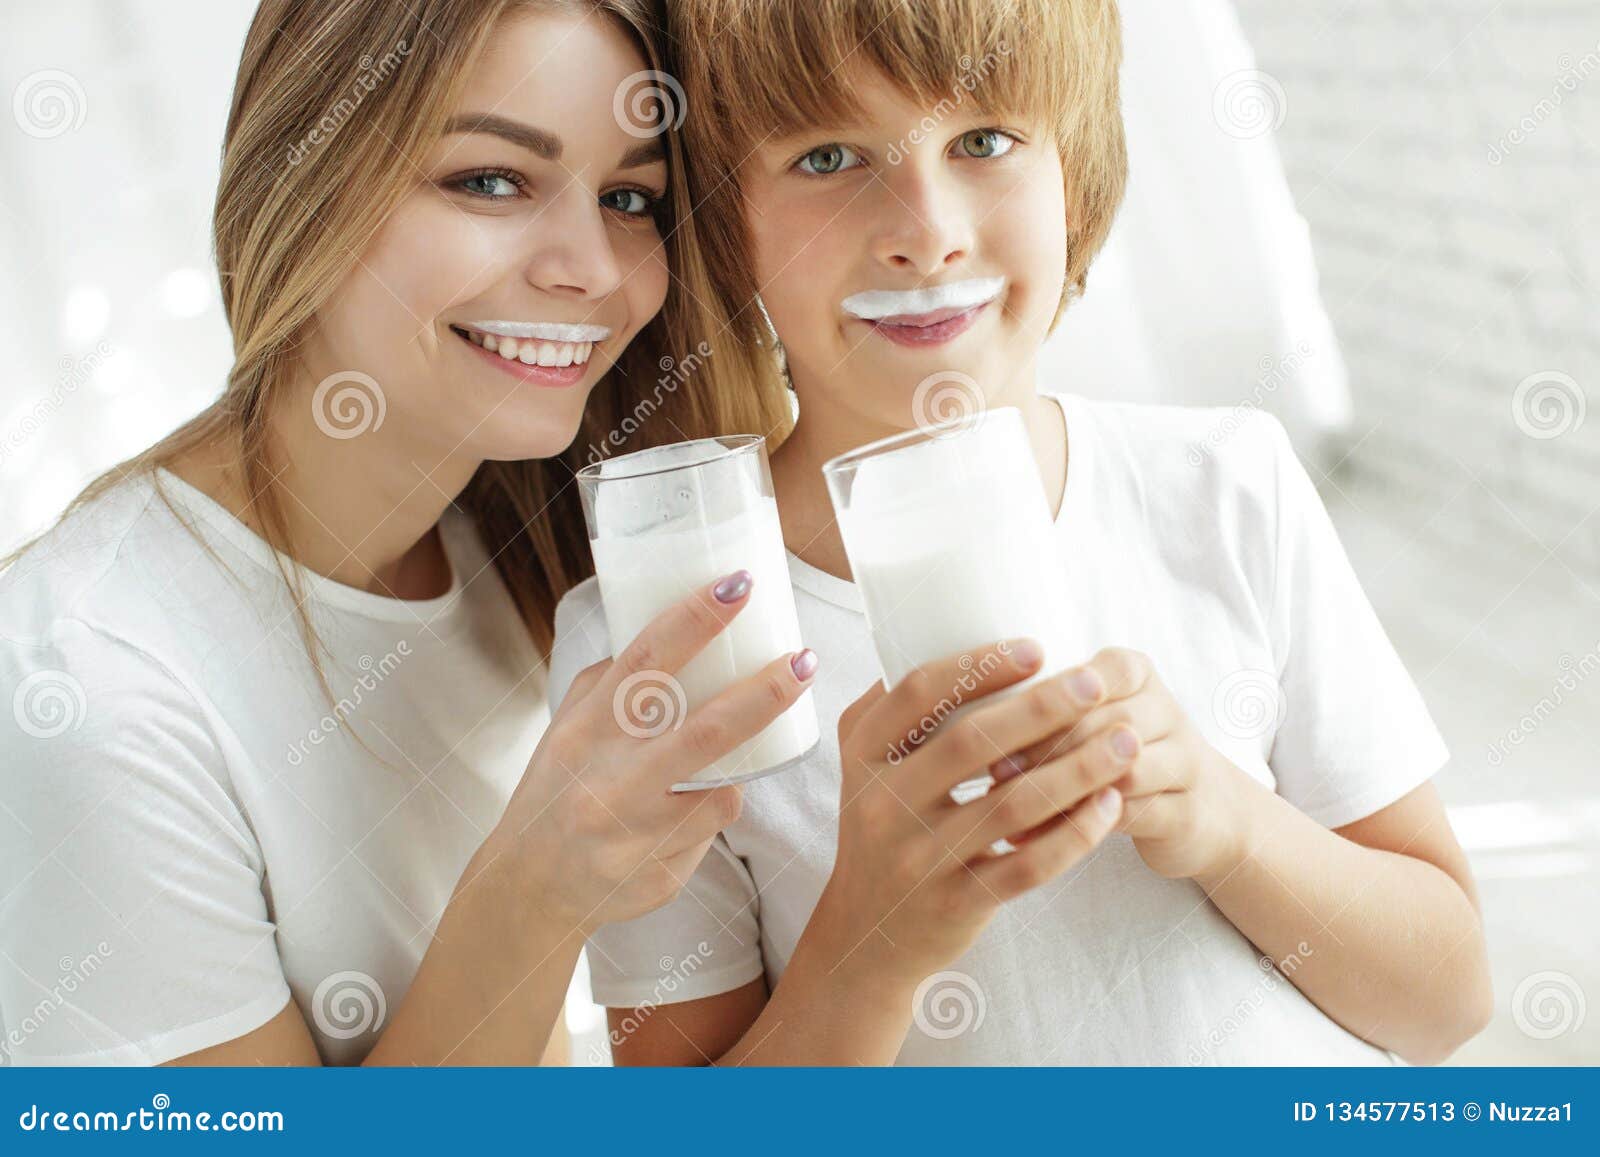 Tasty Milk